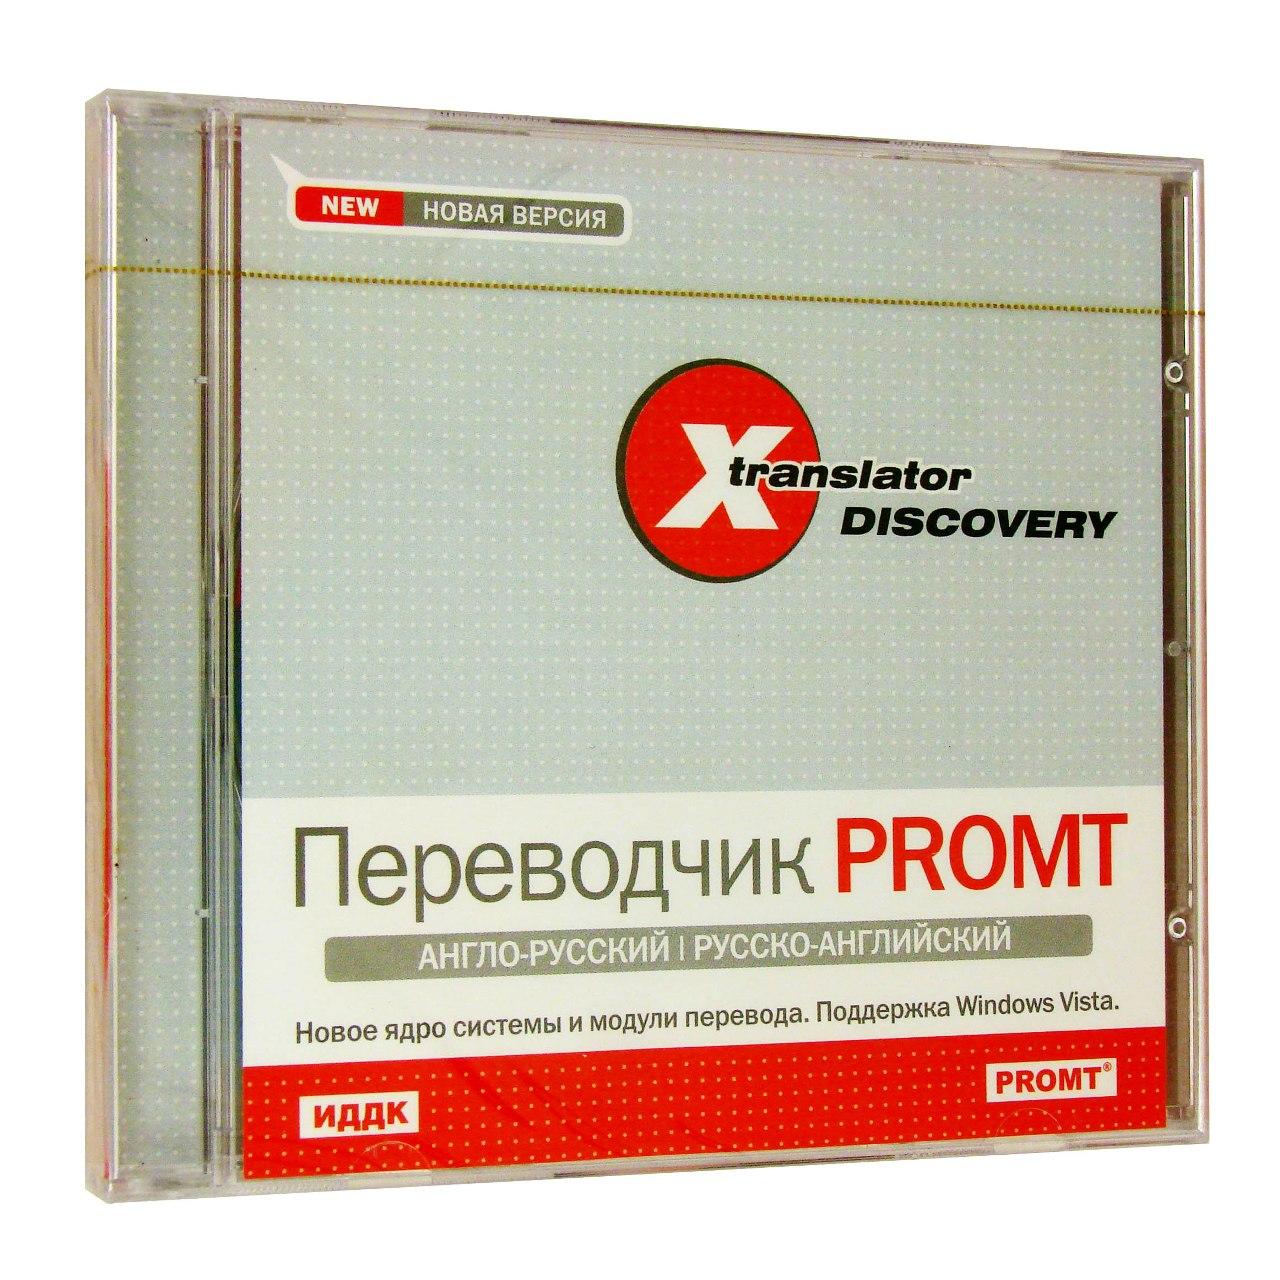 Компьютерный компакт-диск X-Translator Discovery. Переводчик Promt: Англо-русский, русско-английский [X-Translator Discovery] (PC), фирма "ИДДК", 1CD